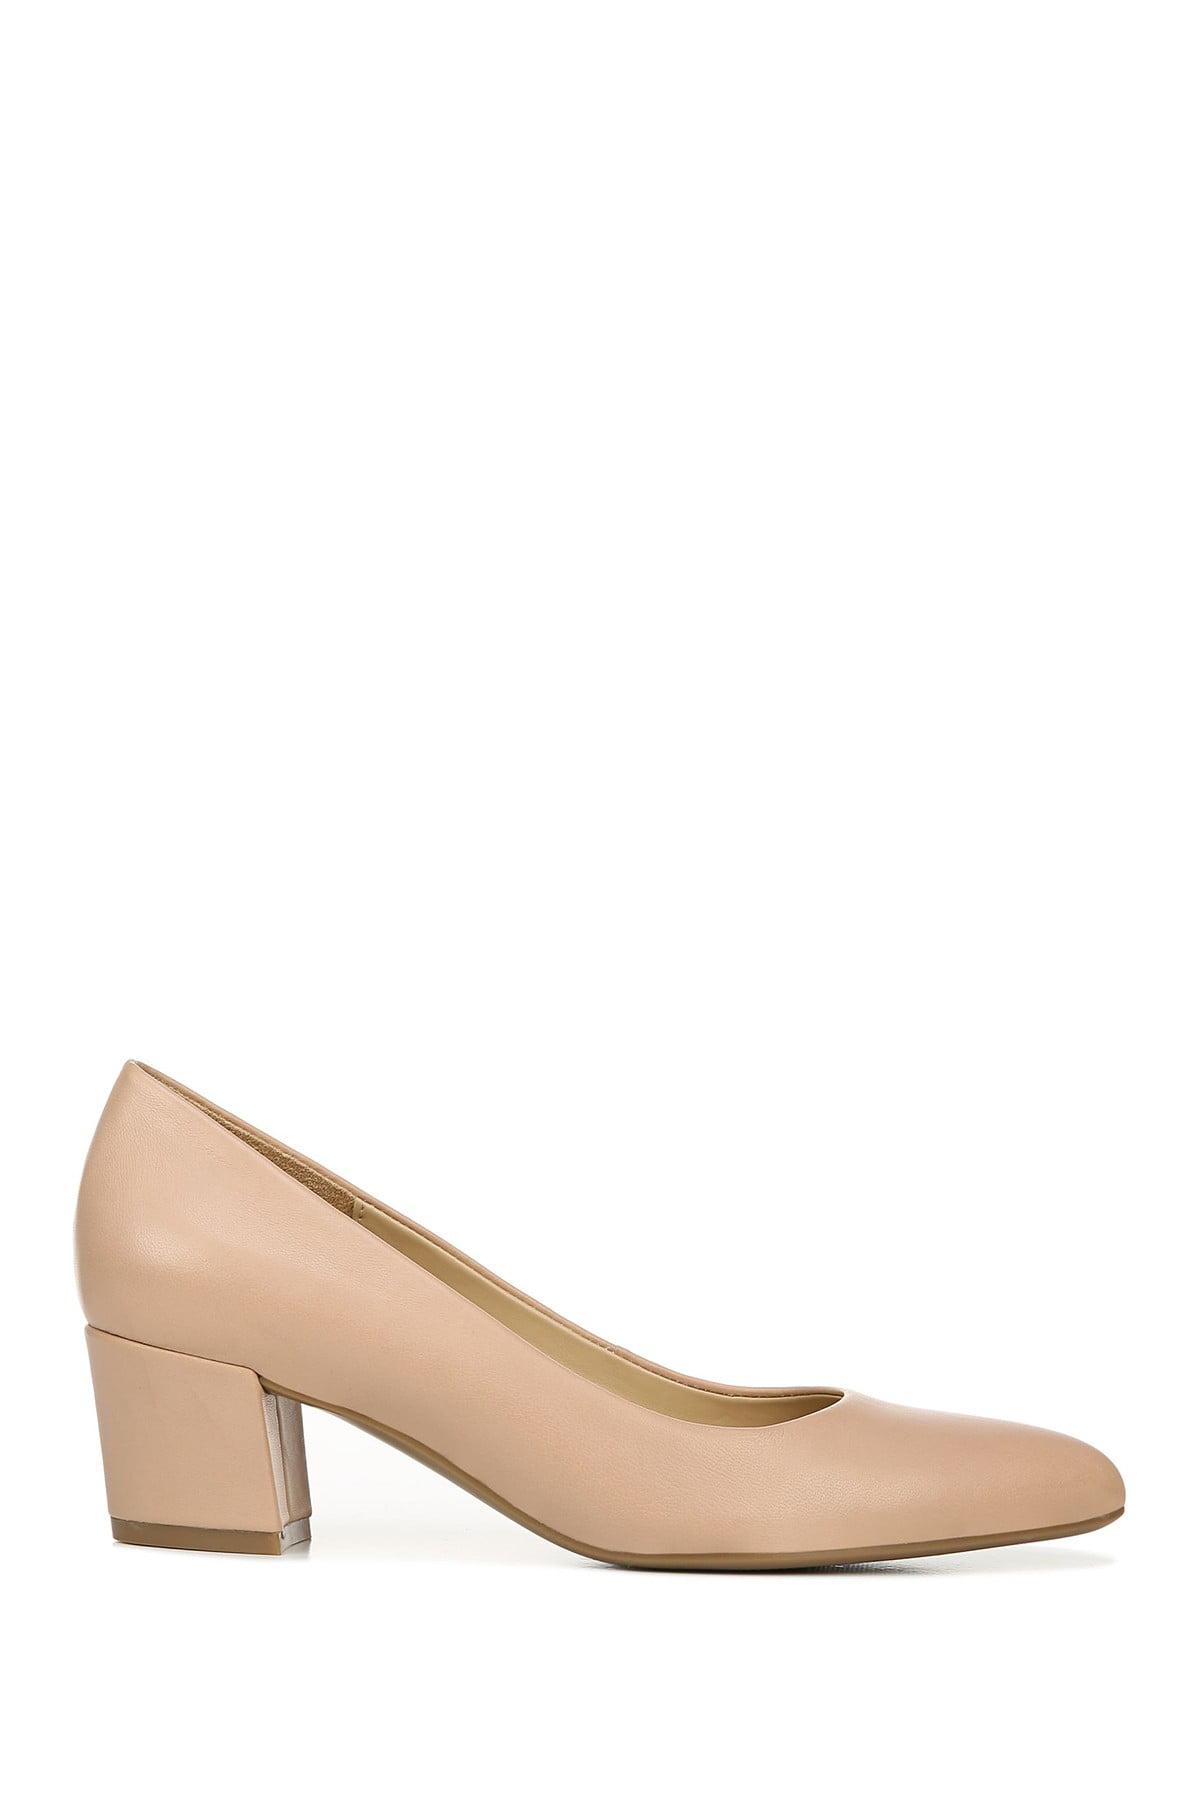 wide width nude block heels